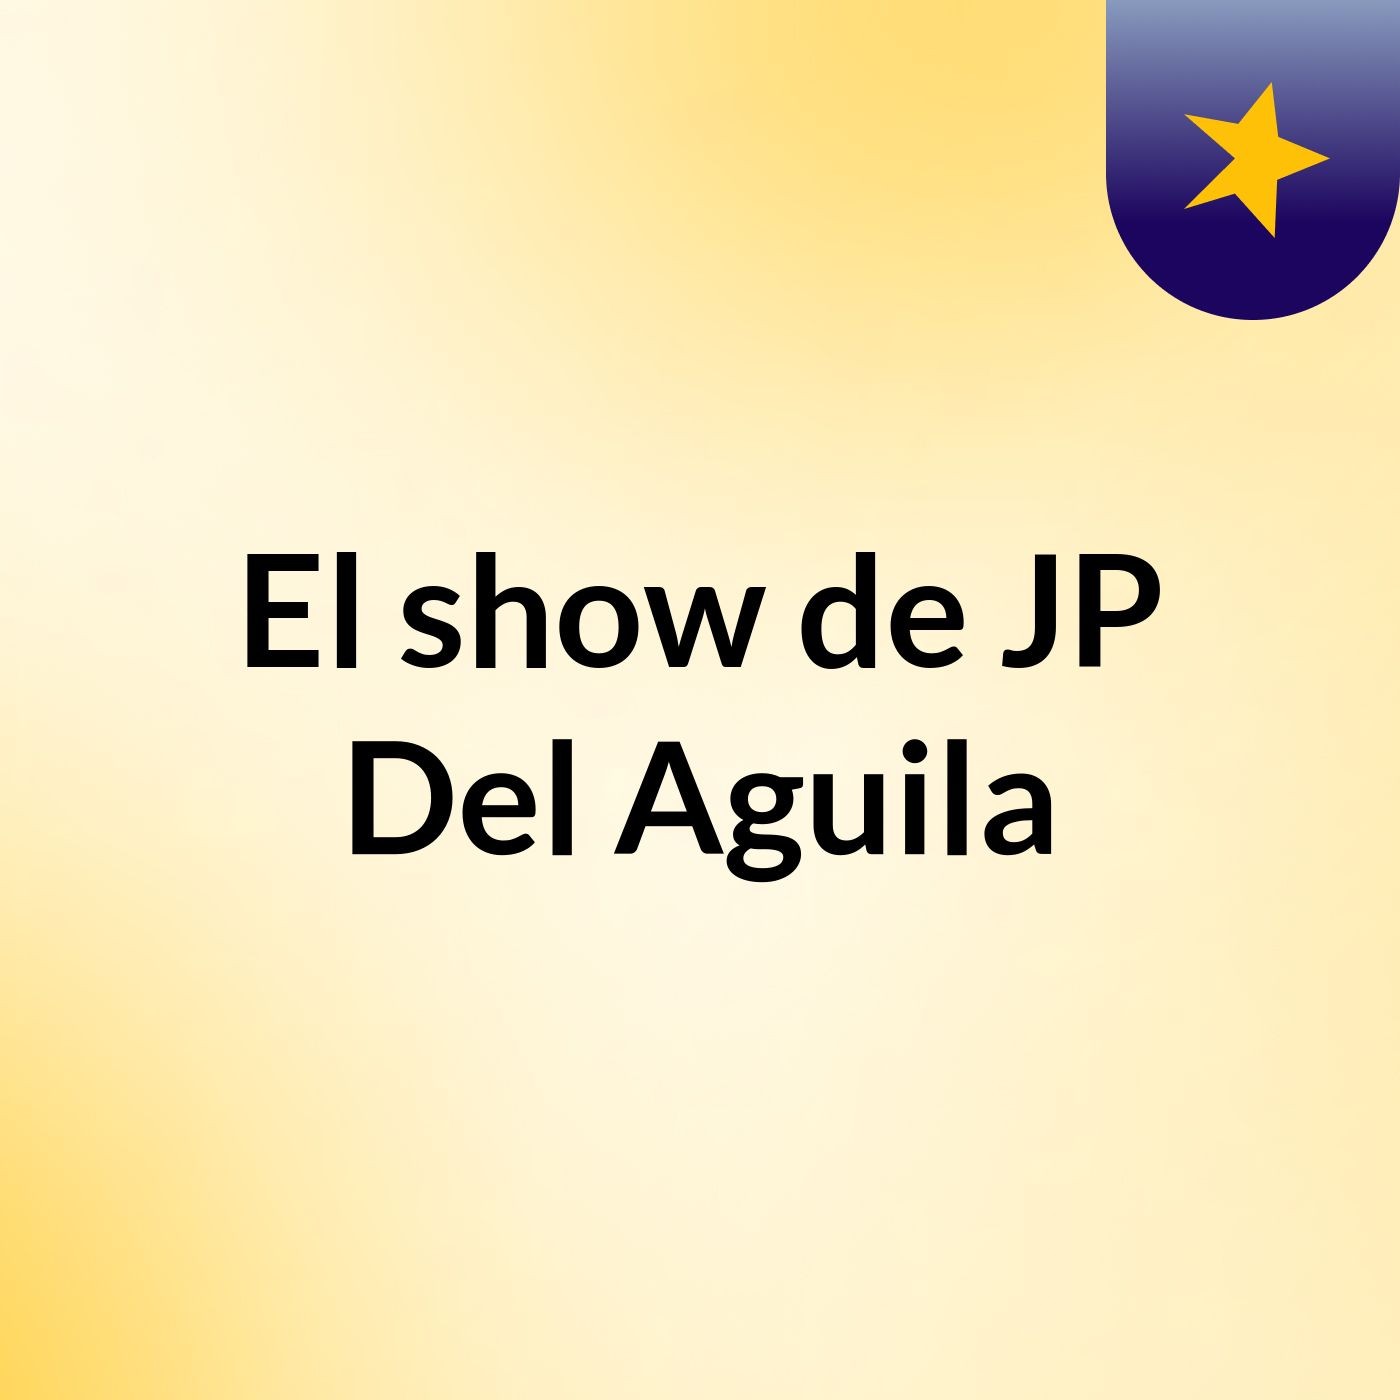 El show de JP Del Aguila